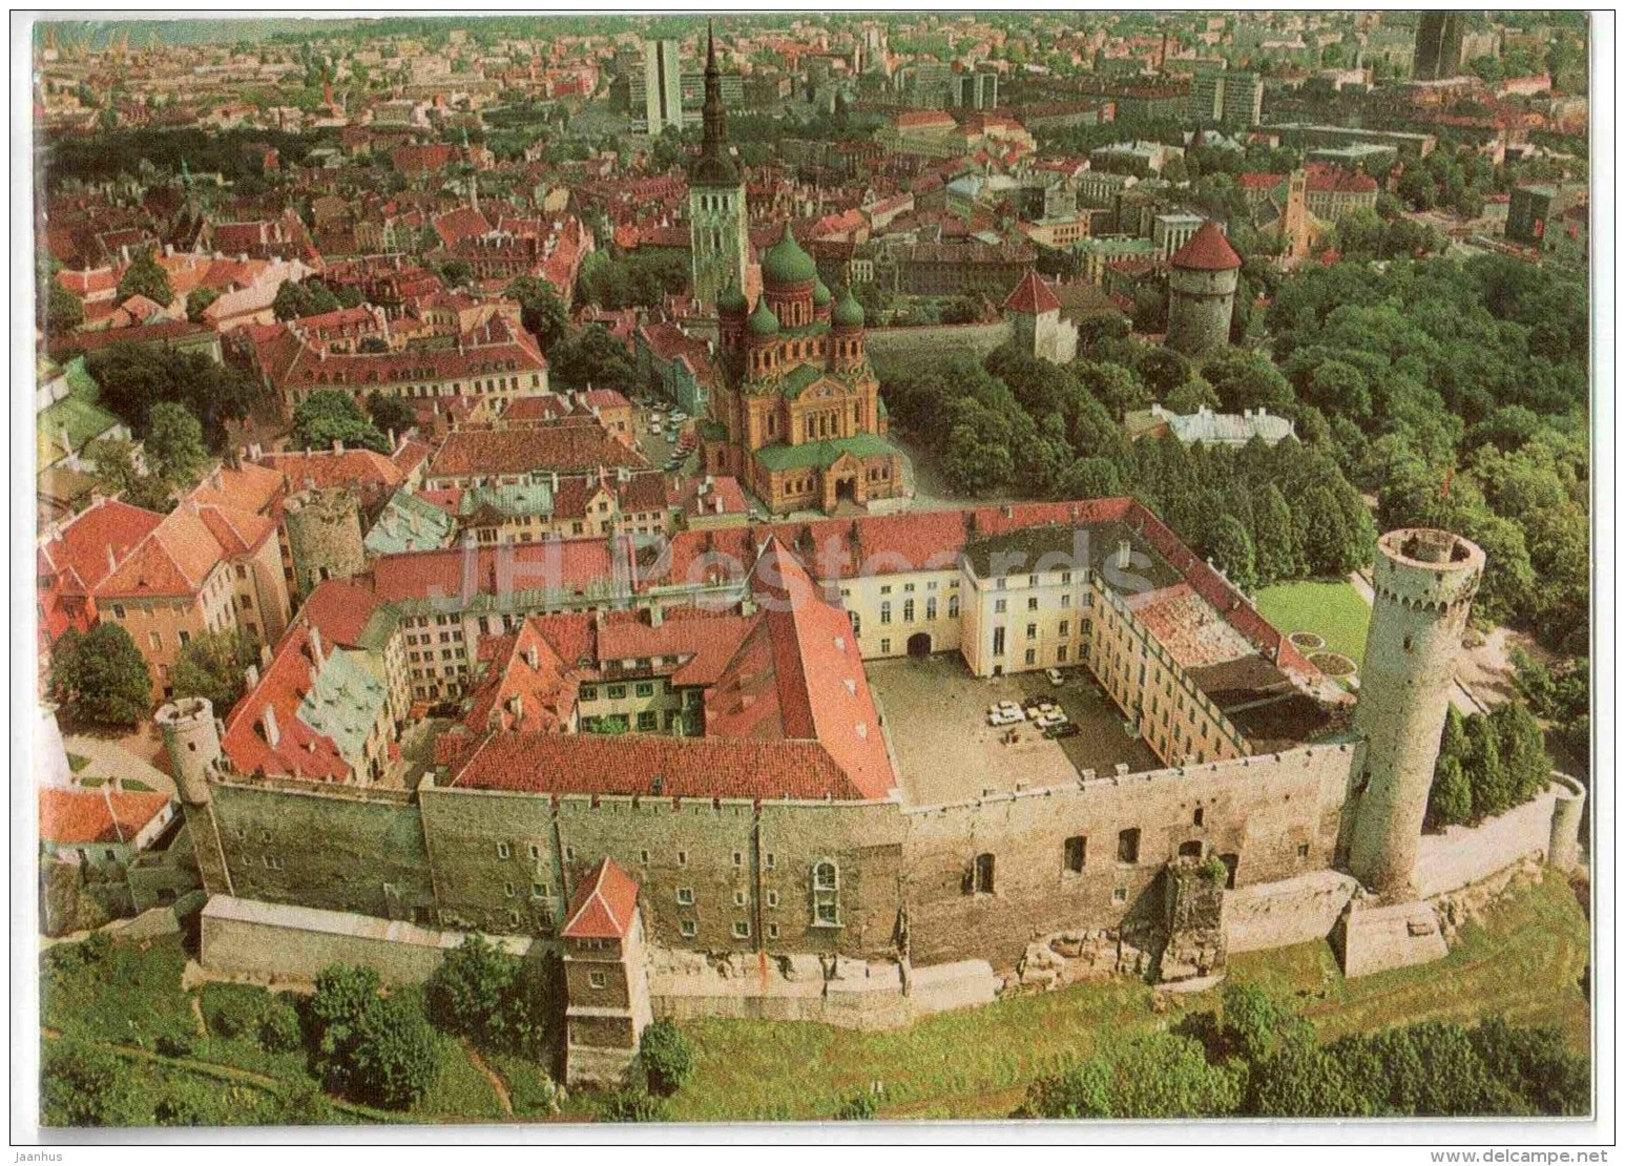 Toompea Castle - Old Town panorama - Tallinn - 1989 - Estonia USSR - unused - JH Postcards